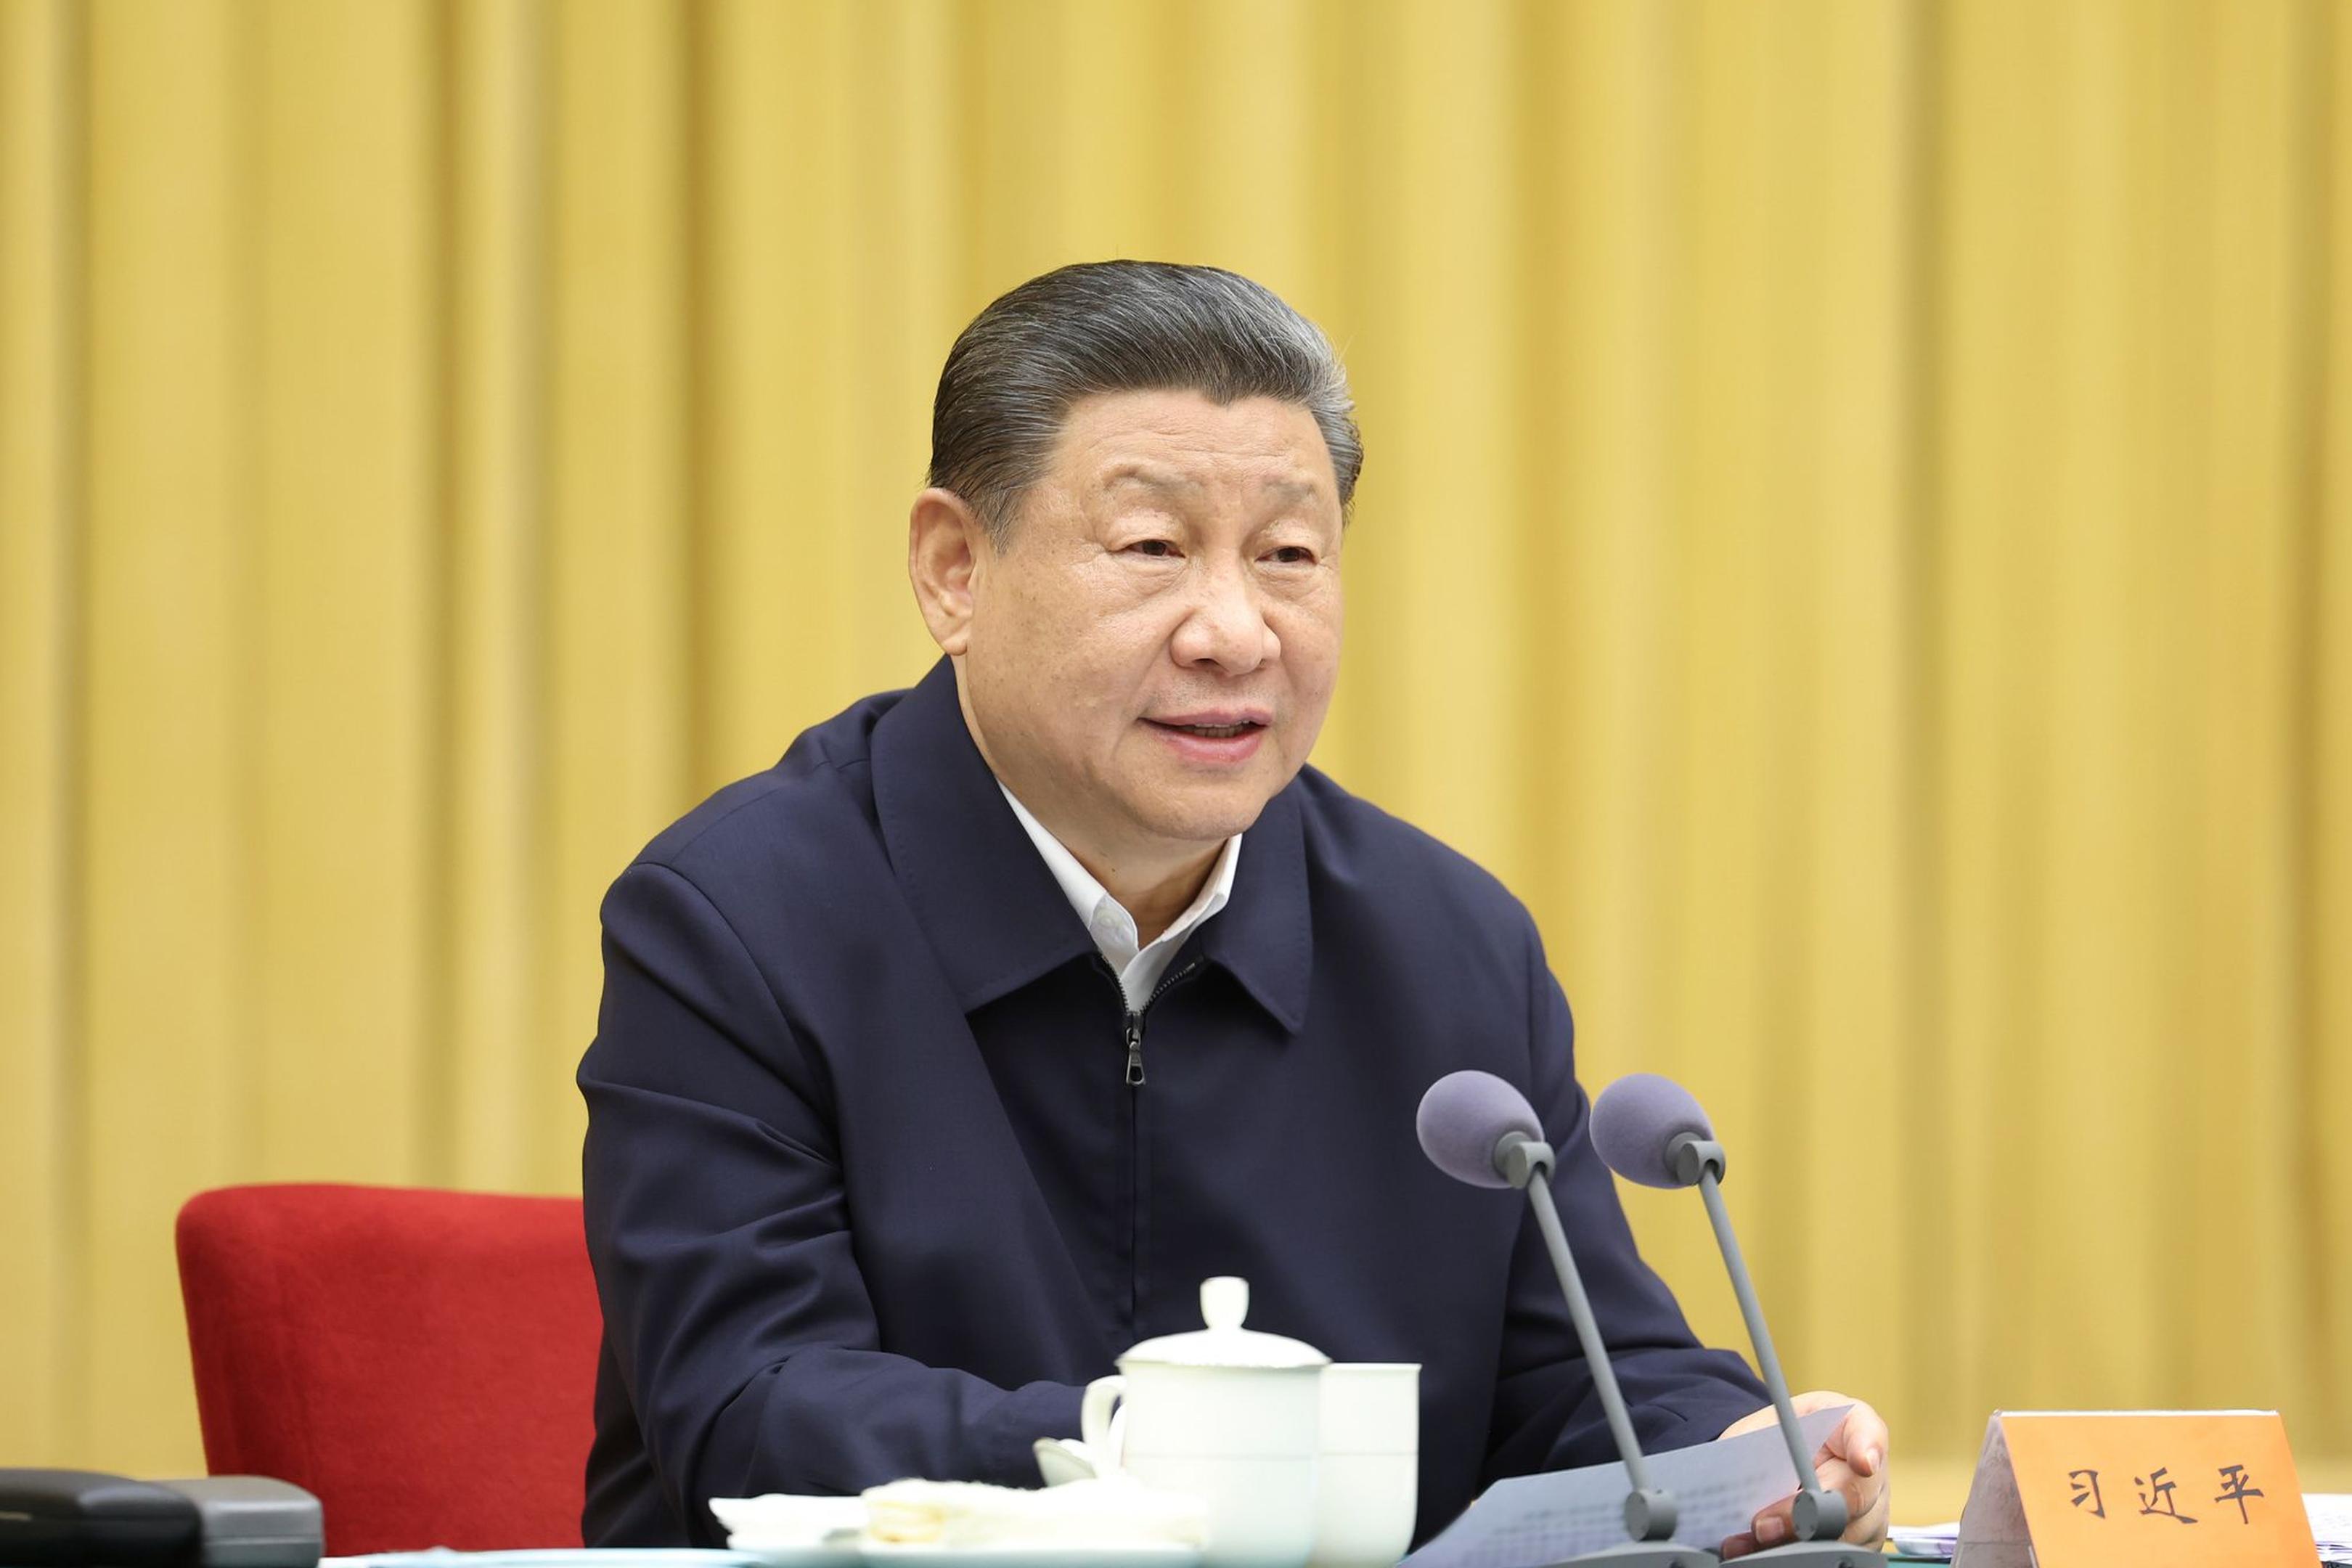 Chinas Staats- und Parteichef Xi Jinping hat seine Europareise begonnen.